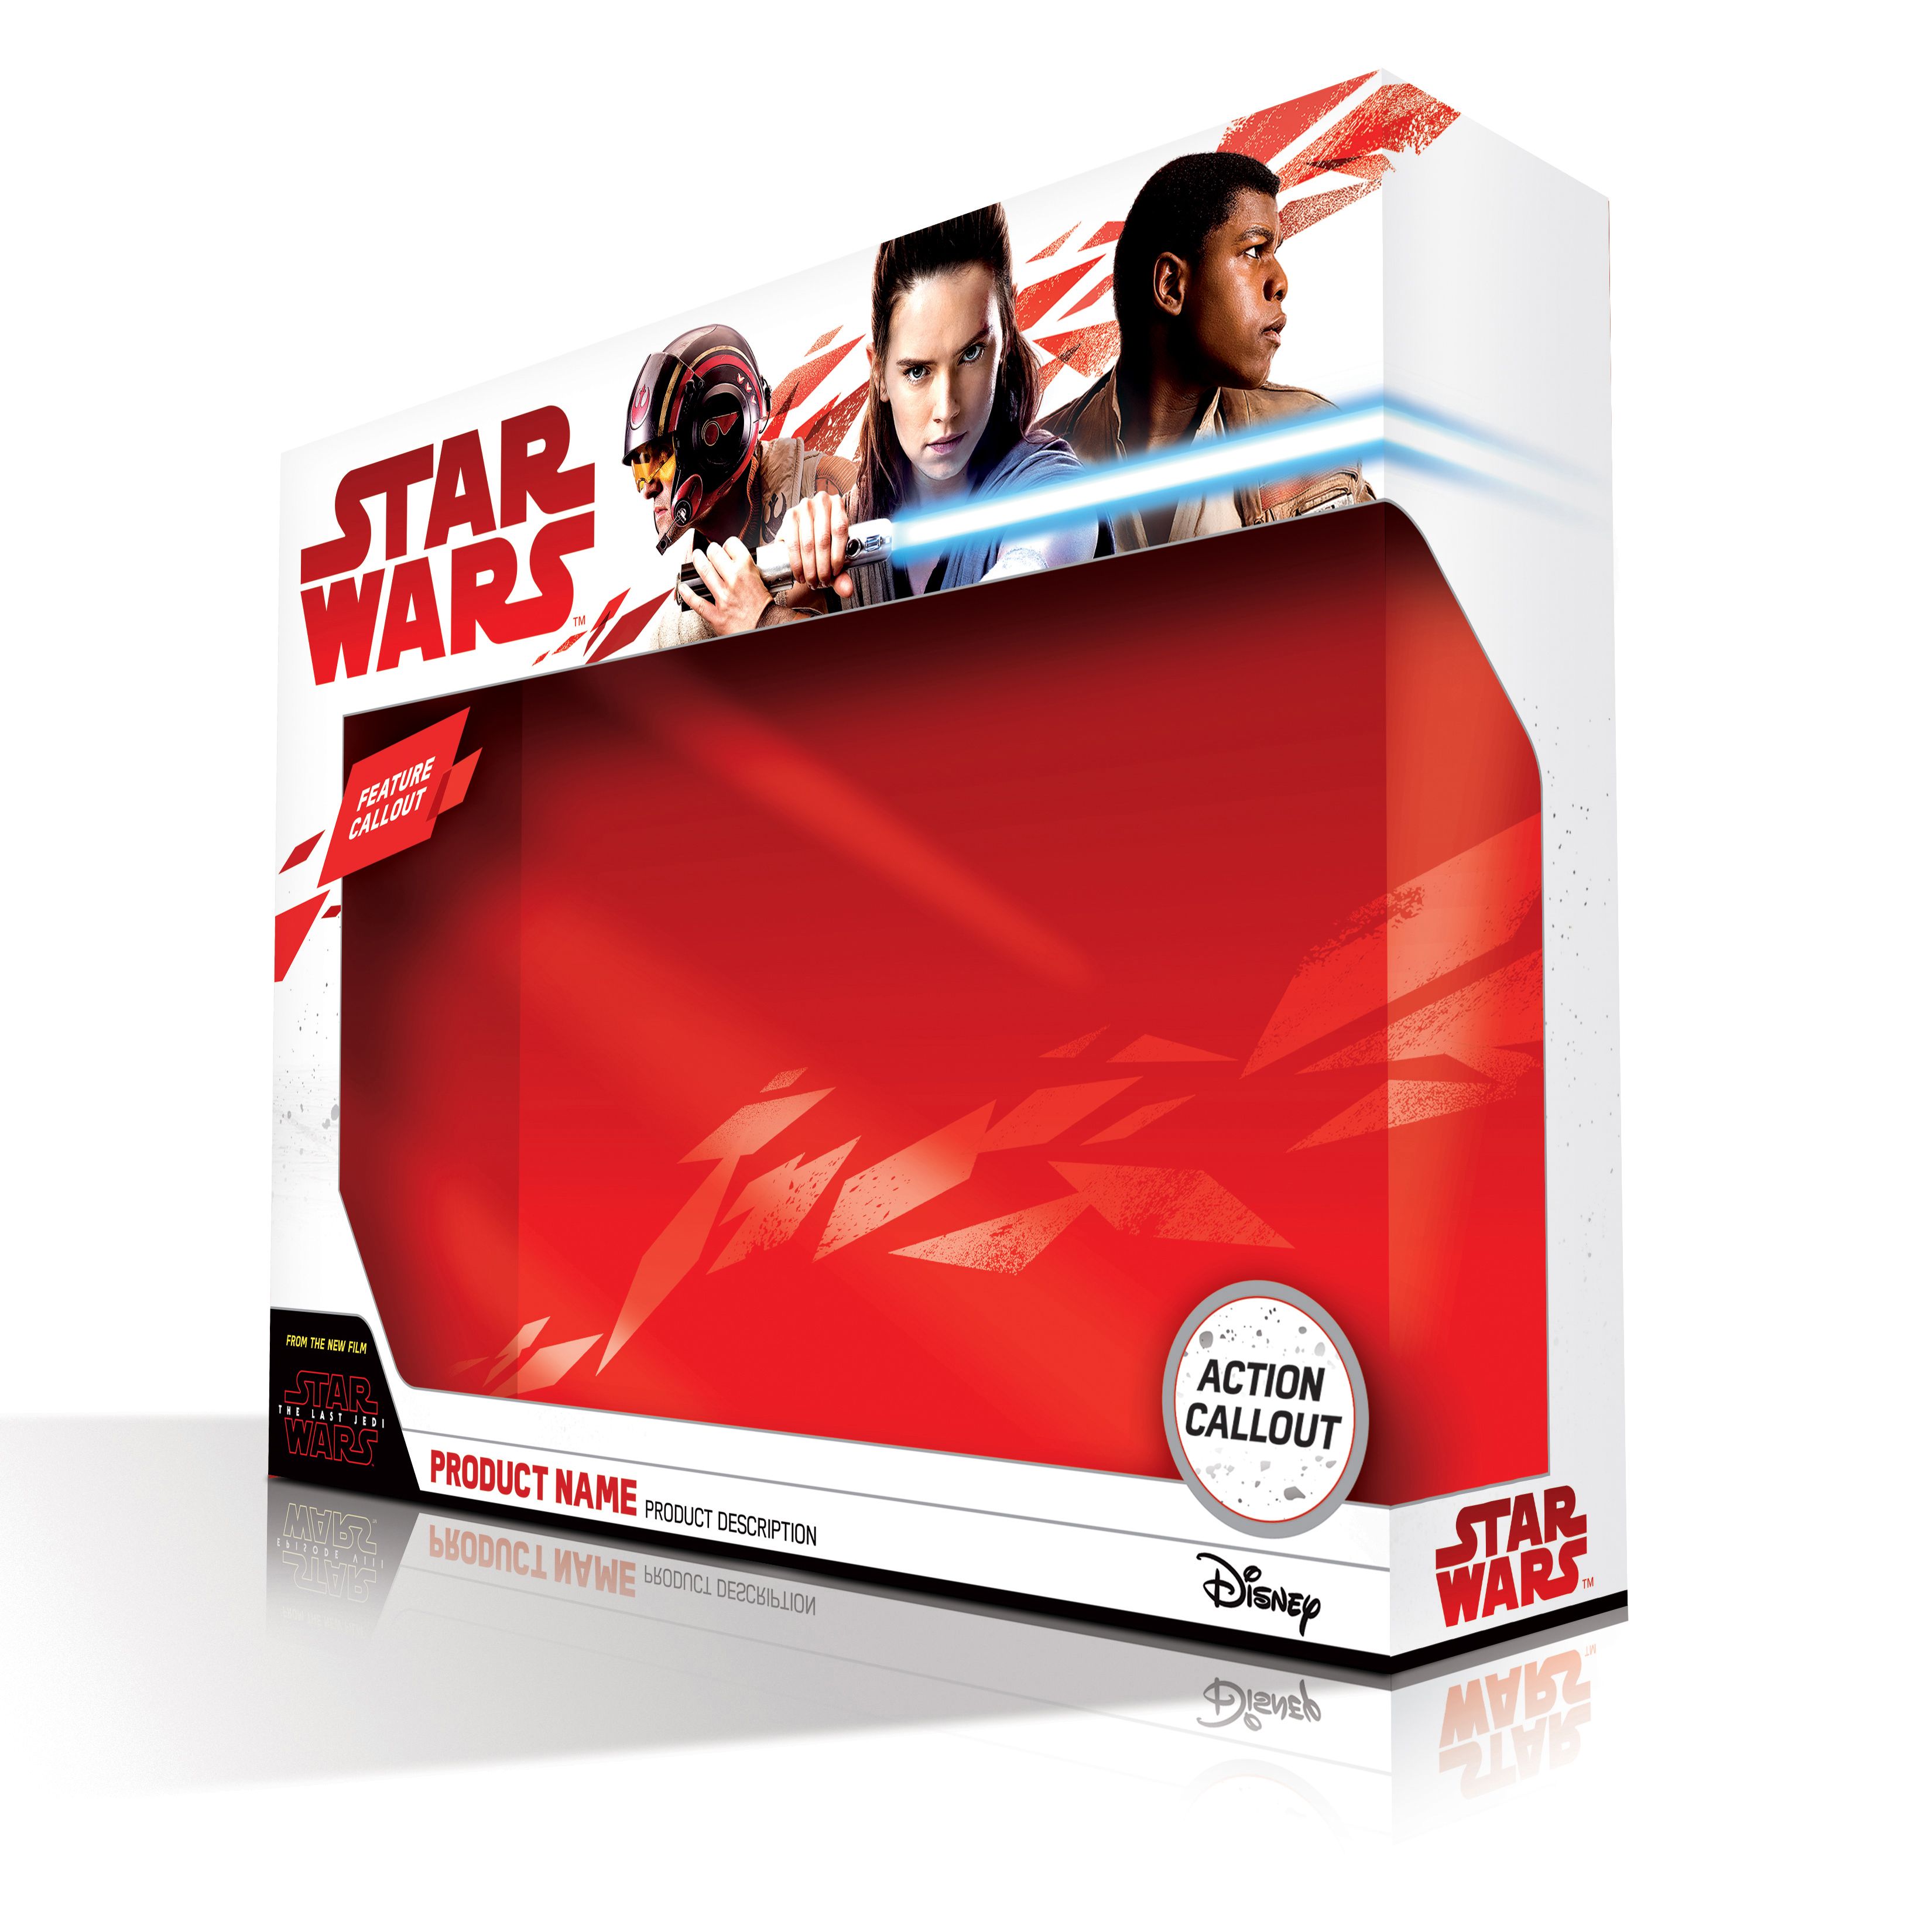 Star Wars The Last Jedi Toy Packaging Rey Finn Poe